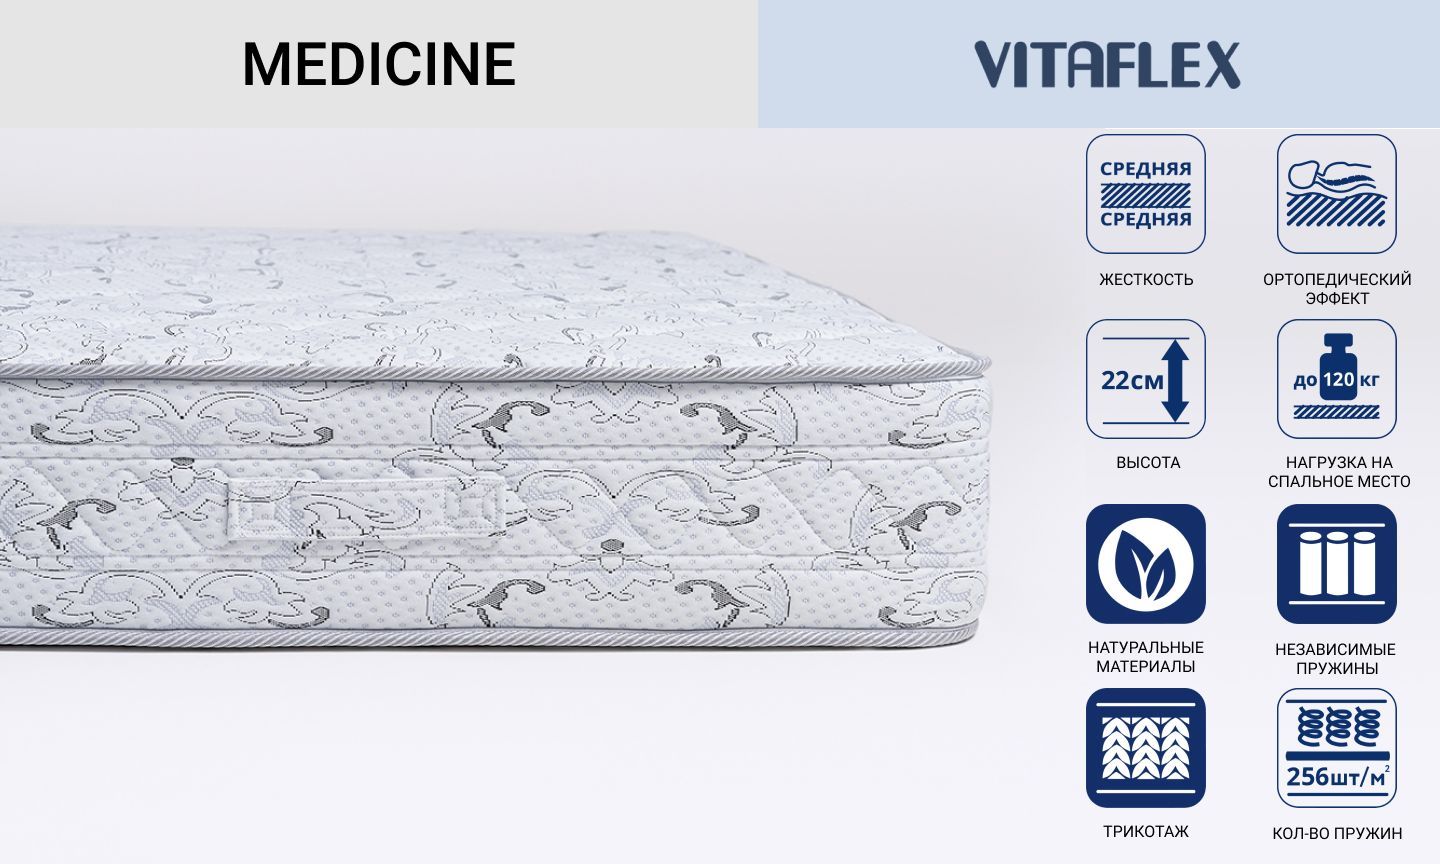 Двухсторонний матрас Vitaflex серии Medicine с независимыми пружинами